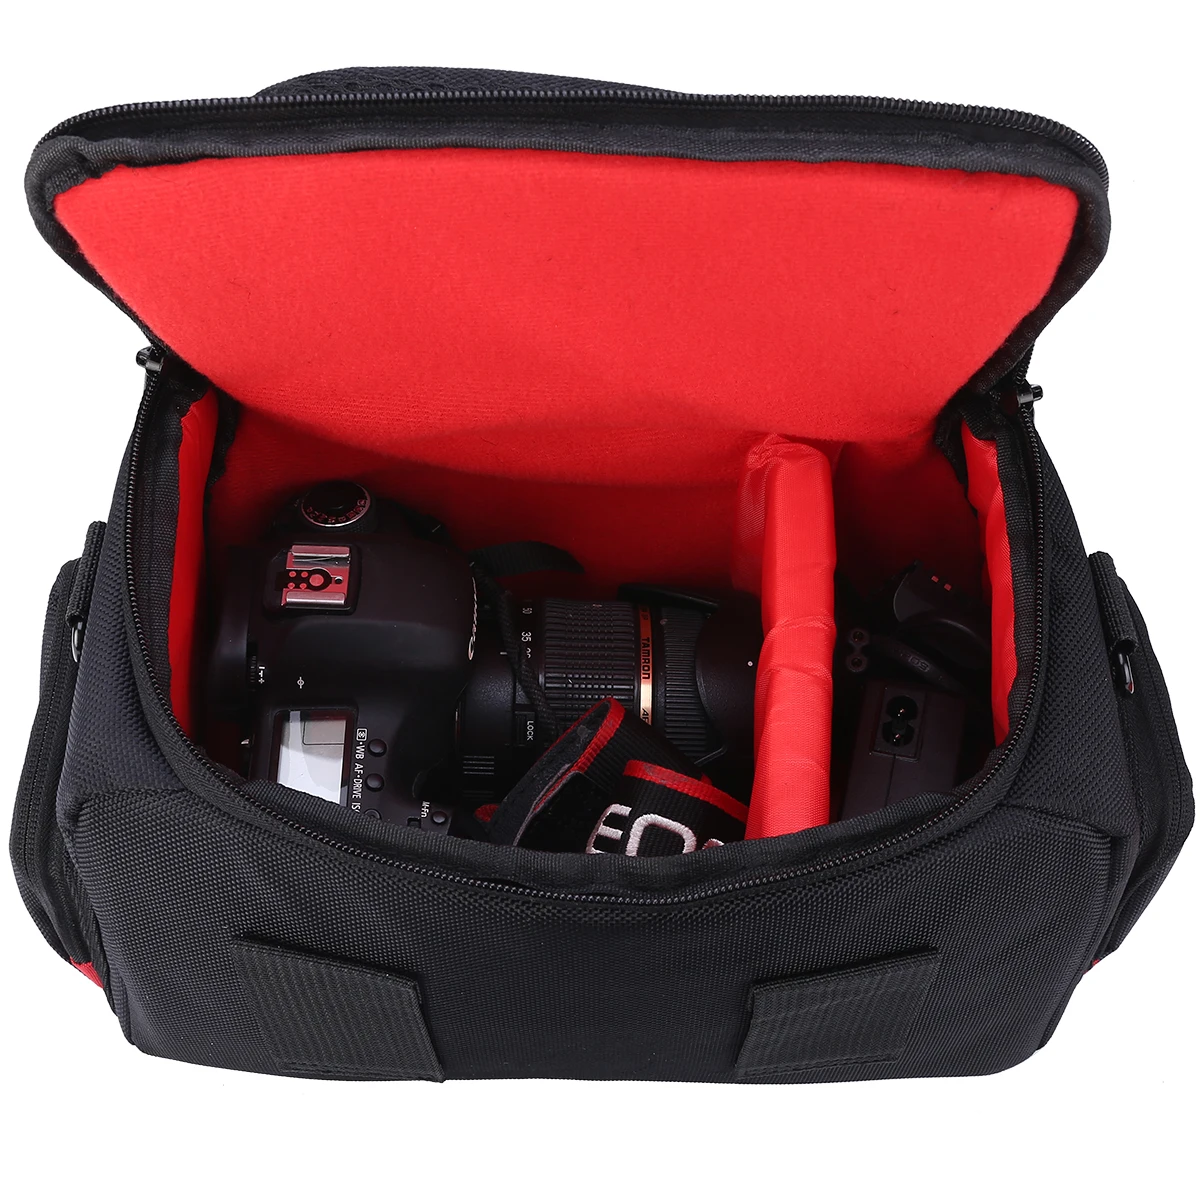 1 шт., водонепроницаемая защитная сумка на плечо для камеры, портативный чехол для переноски, сумки для хранения, для Canon, Nikon, Защита камеры Mayitr